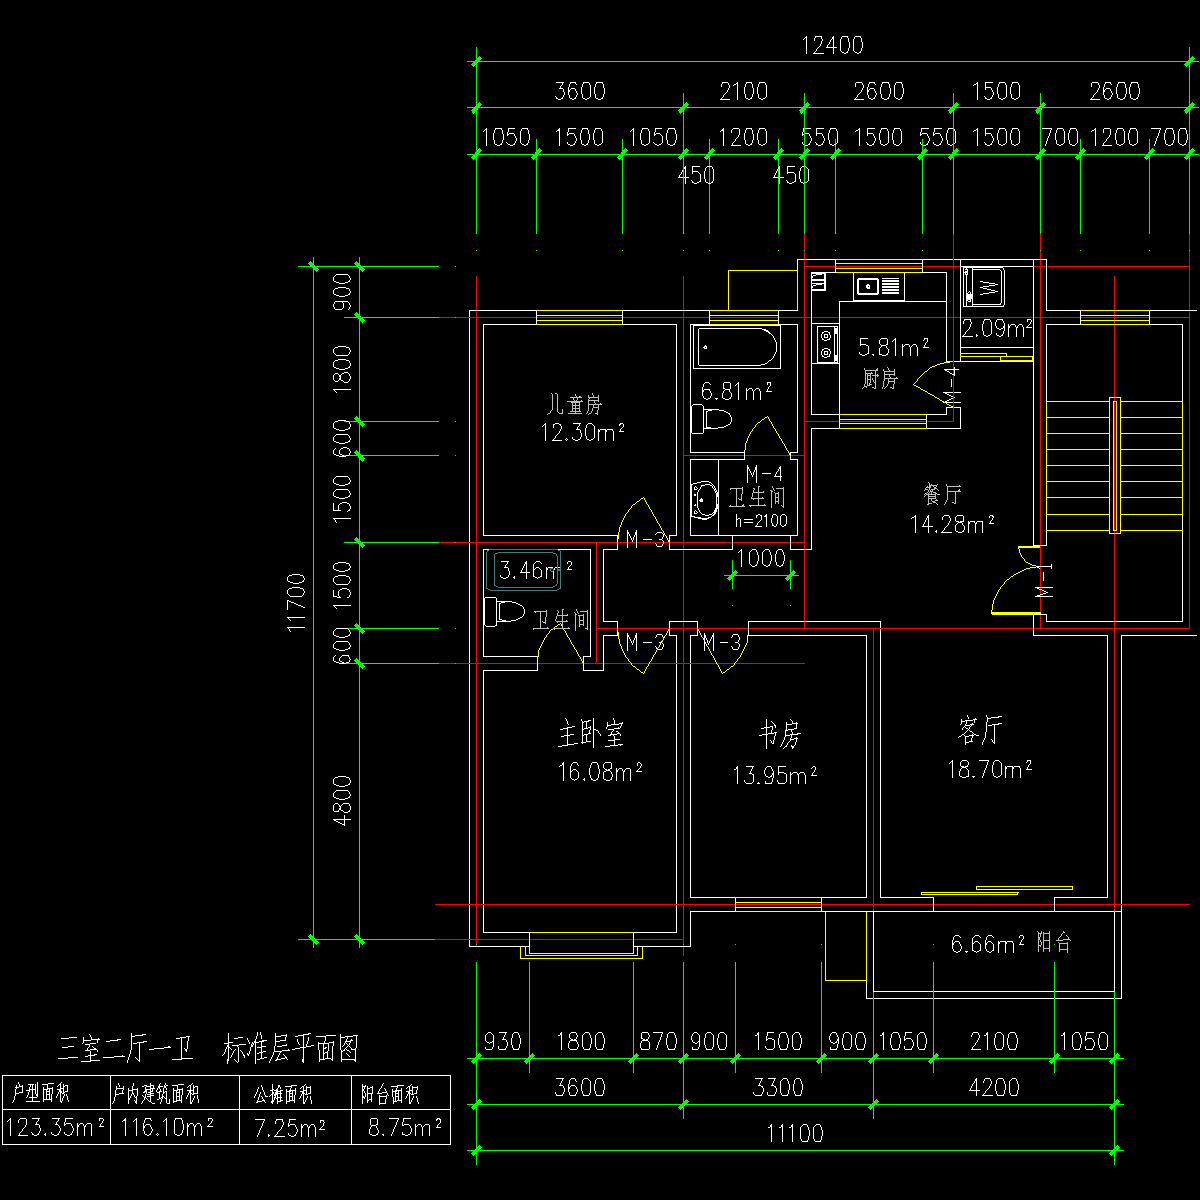 板式多层单户三室二厅一卫户型CAD图纸(123)